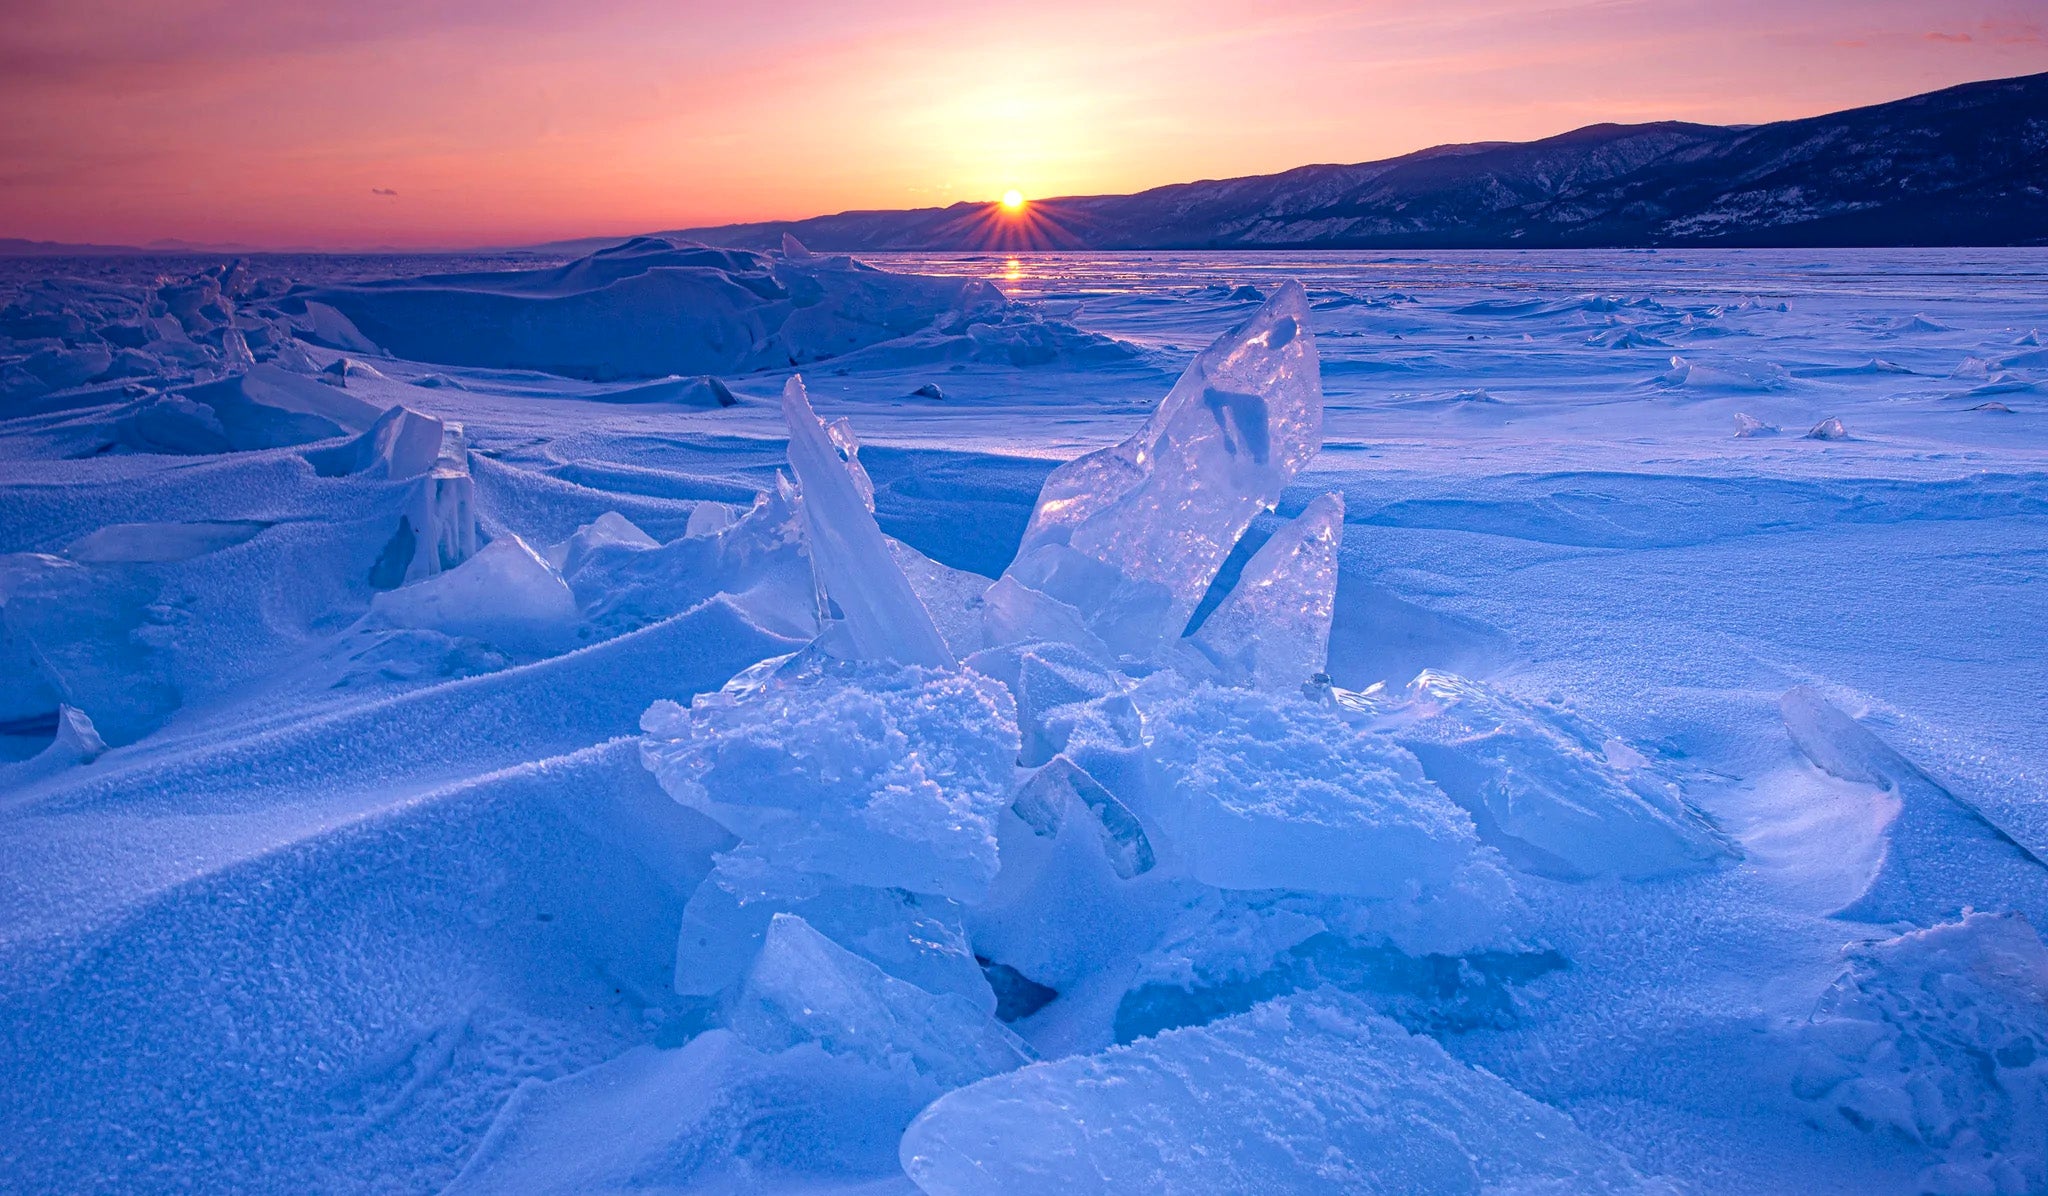 Lake Baikal No.41, Siberia, Russia